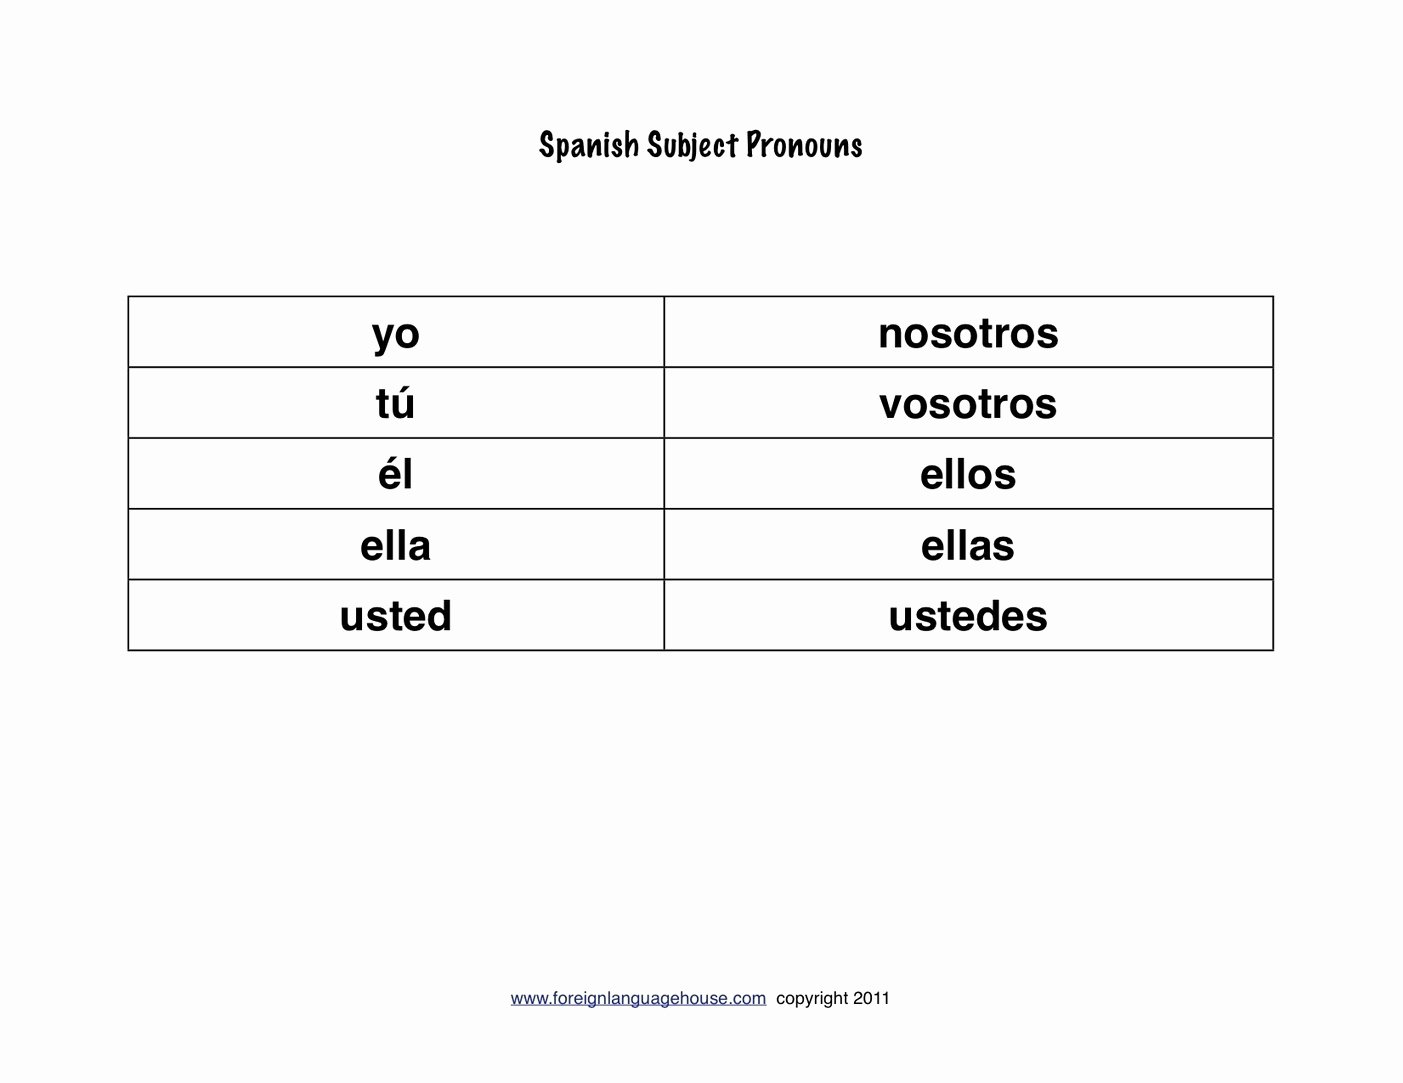 Subject Pronouns In Spanish Worksheet Best Of Worksheet Spanish Subject Pronouns Worksheet Grass Fedjp